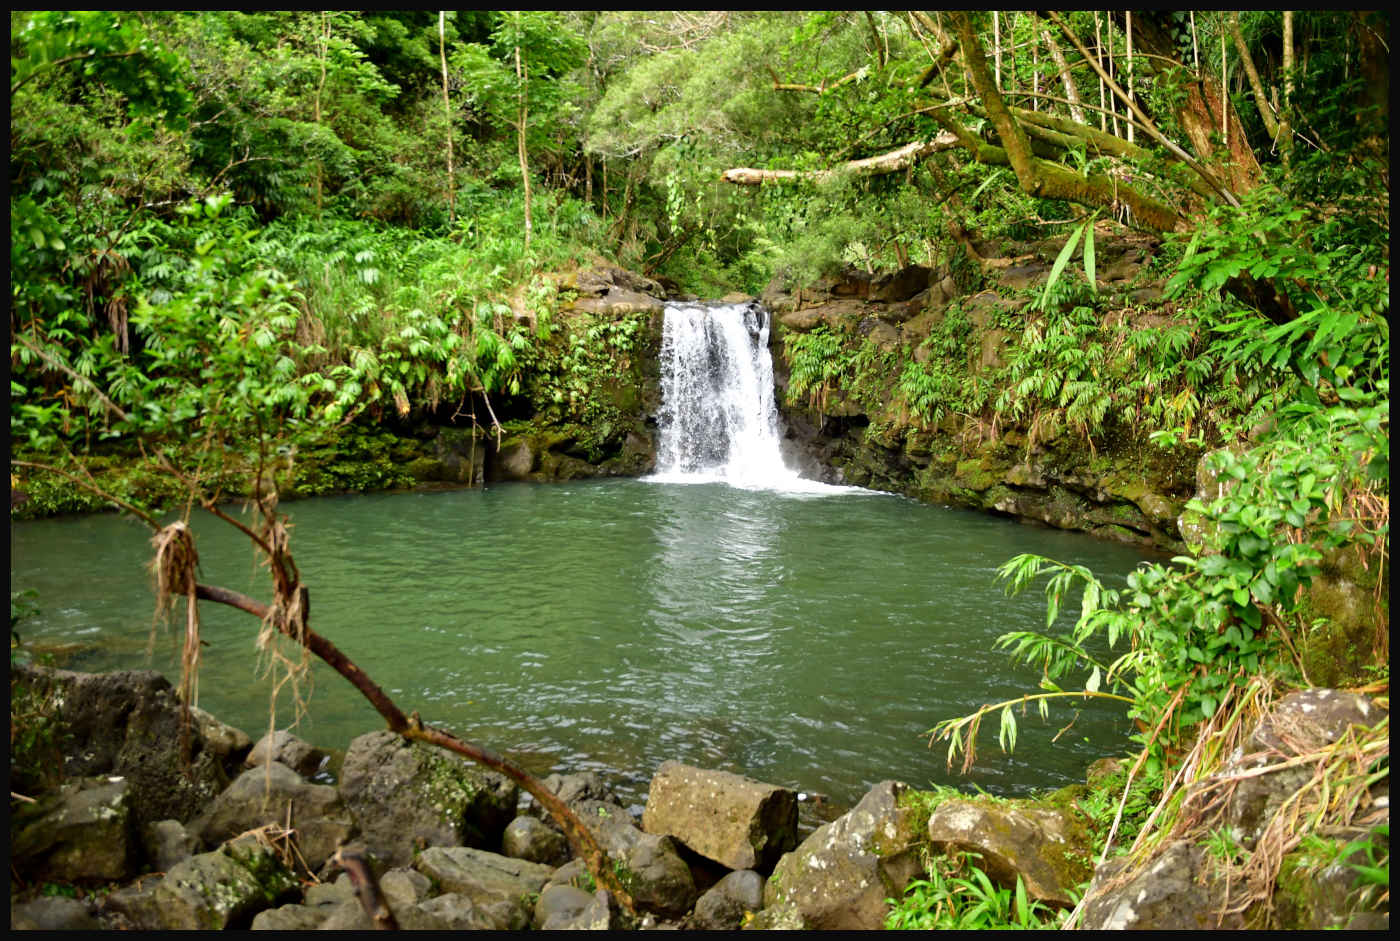 Haipua'ena Falls